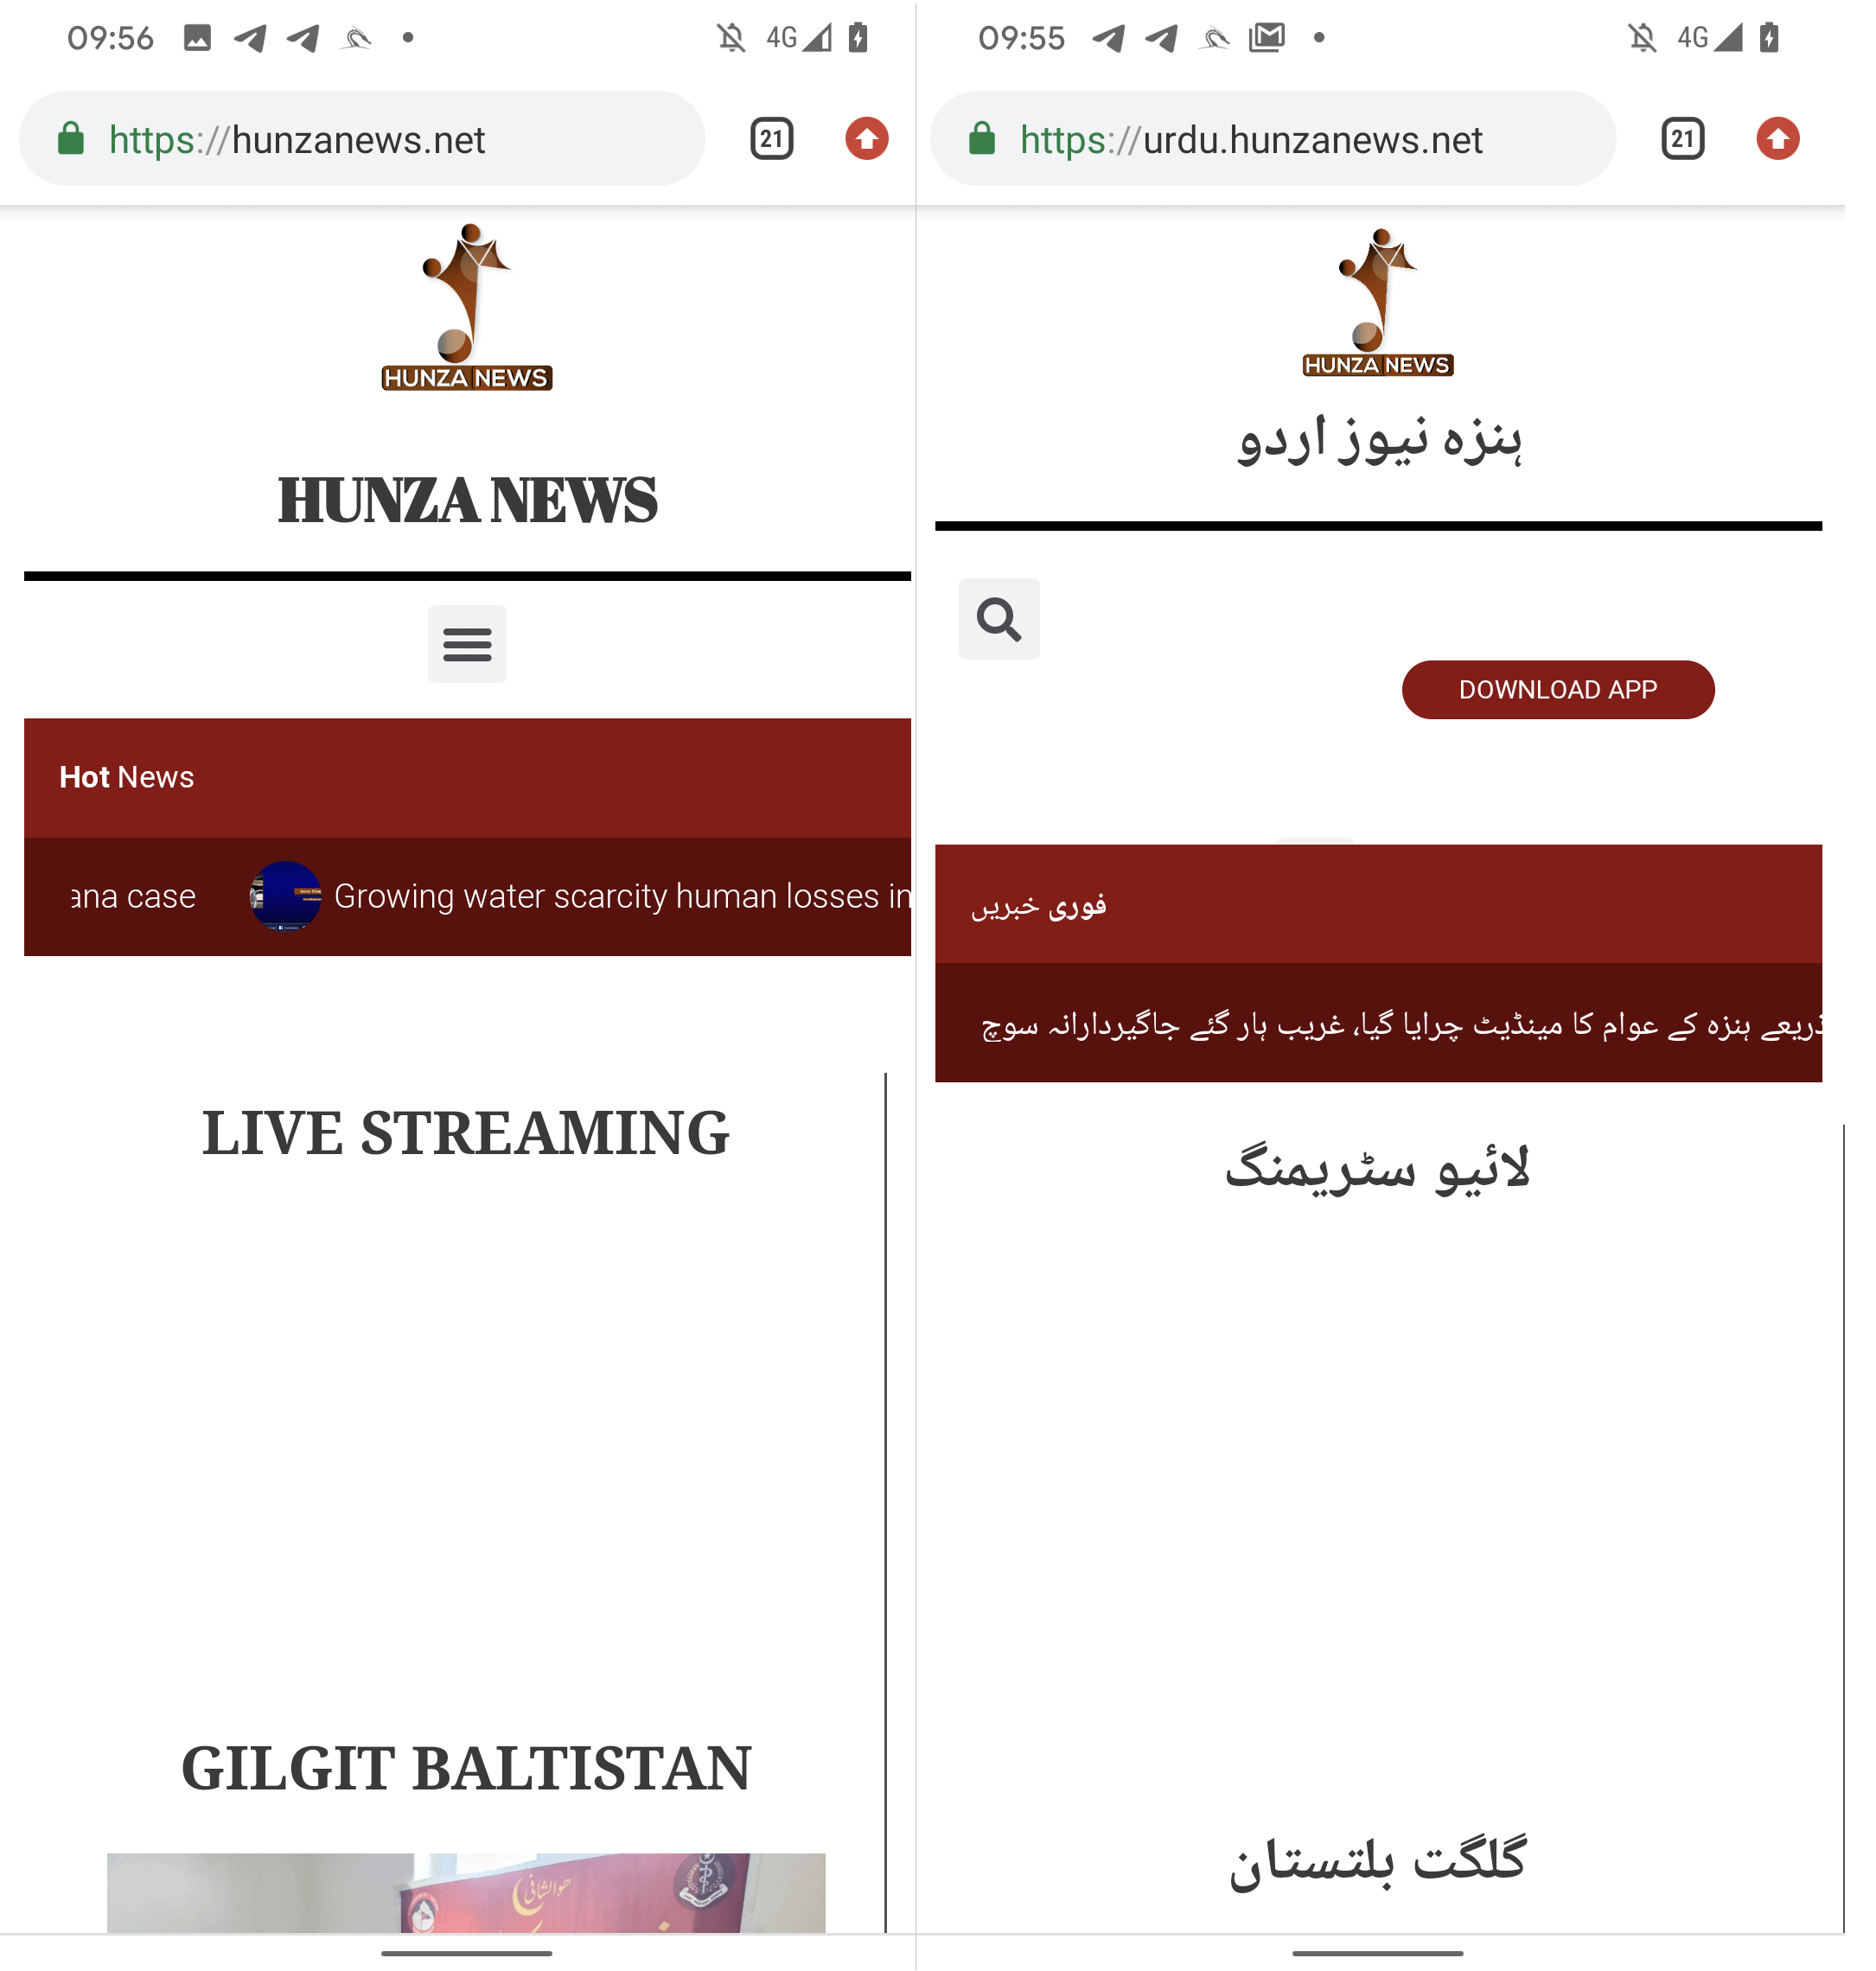 Figuur 6 Engelse (links) en Urdu (rechts) versie Hunza News